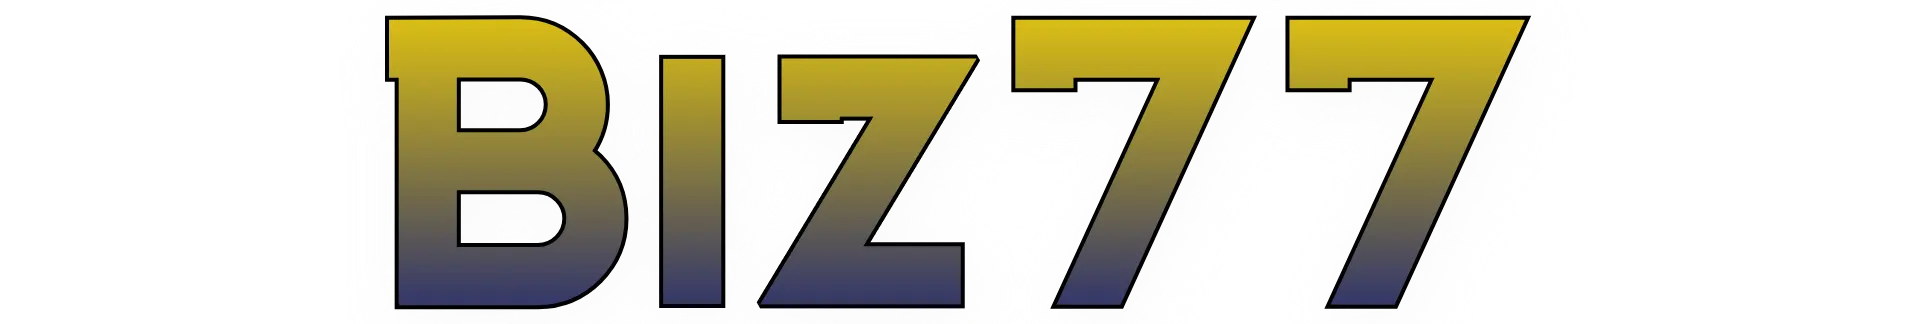 Biz77